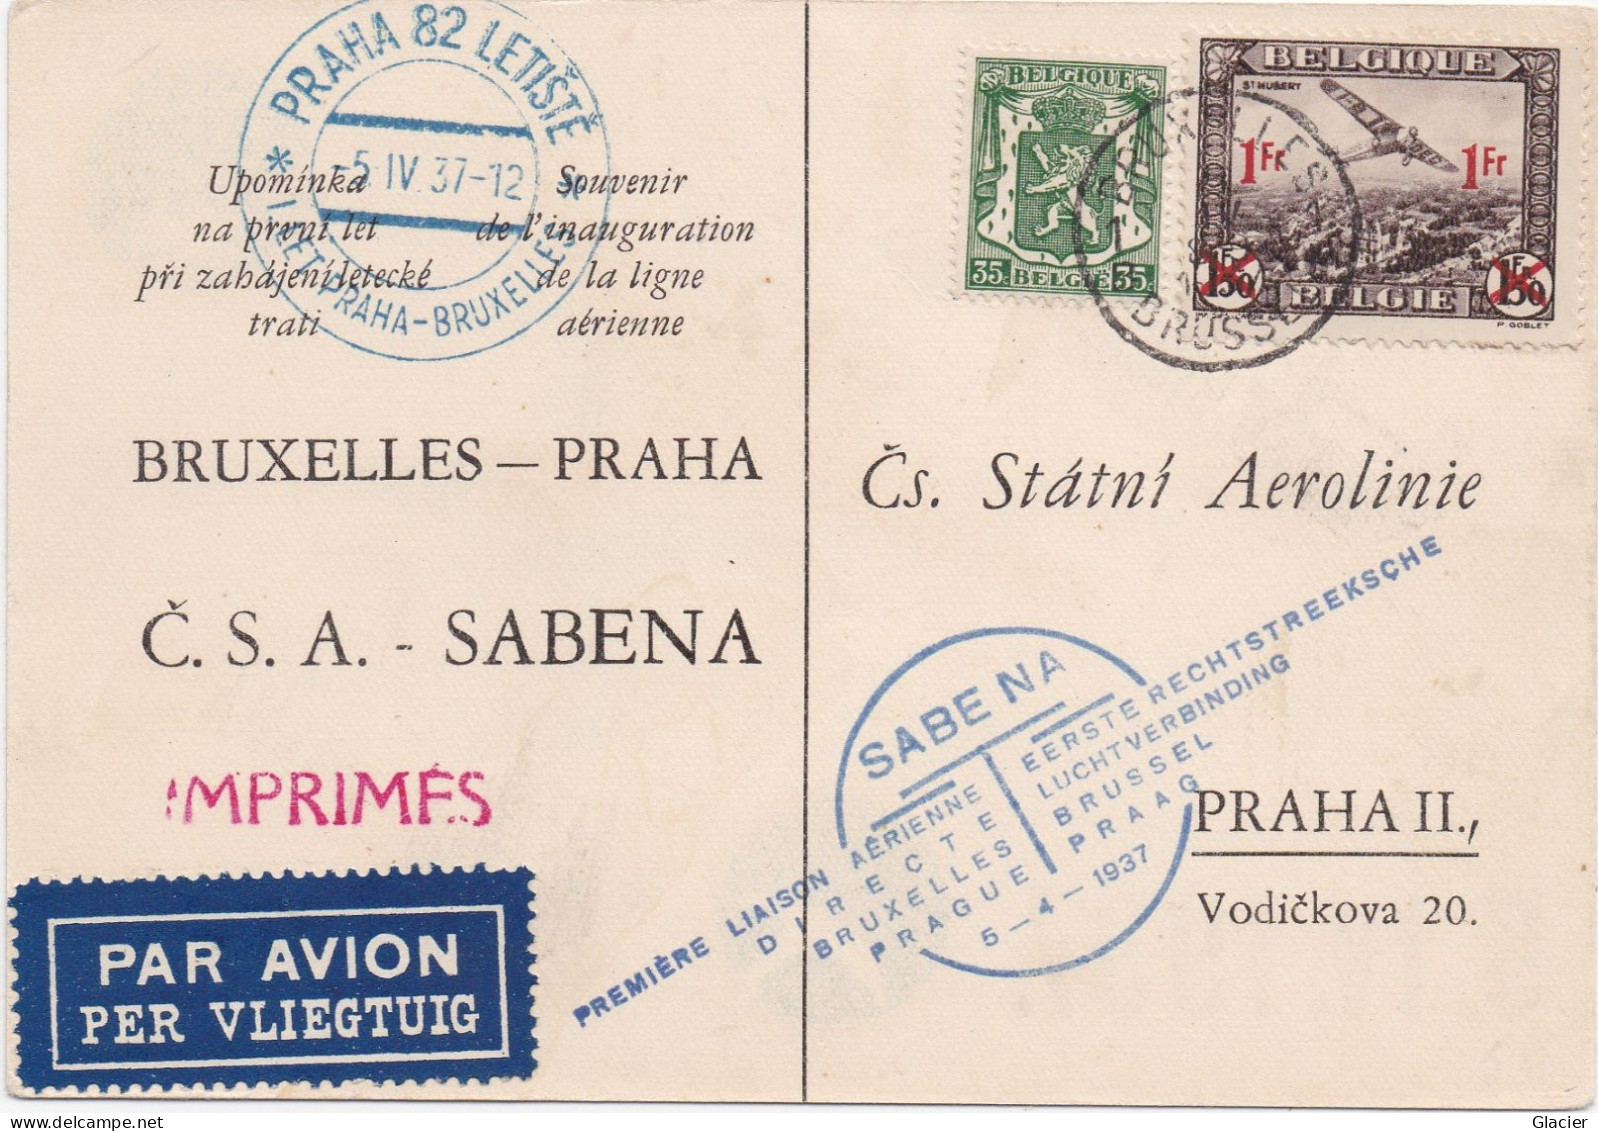 Sabena - Bruxelles-Praha - Liaison Aërienne 5-4-1937 - Č.S.A.-SABENA - Čs. Státni Aerolinie Praha II - Storia Postale